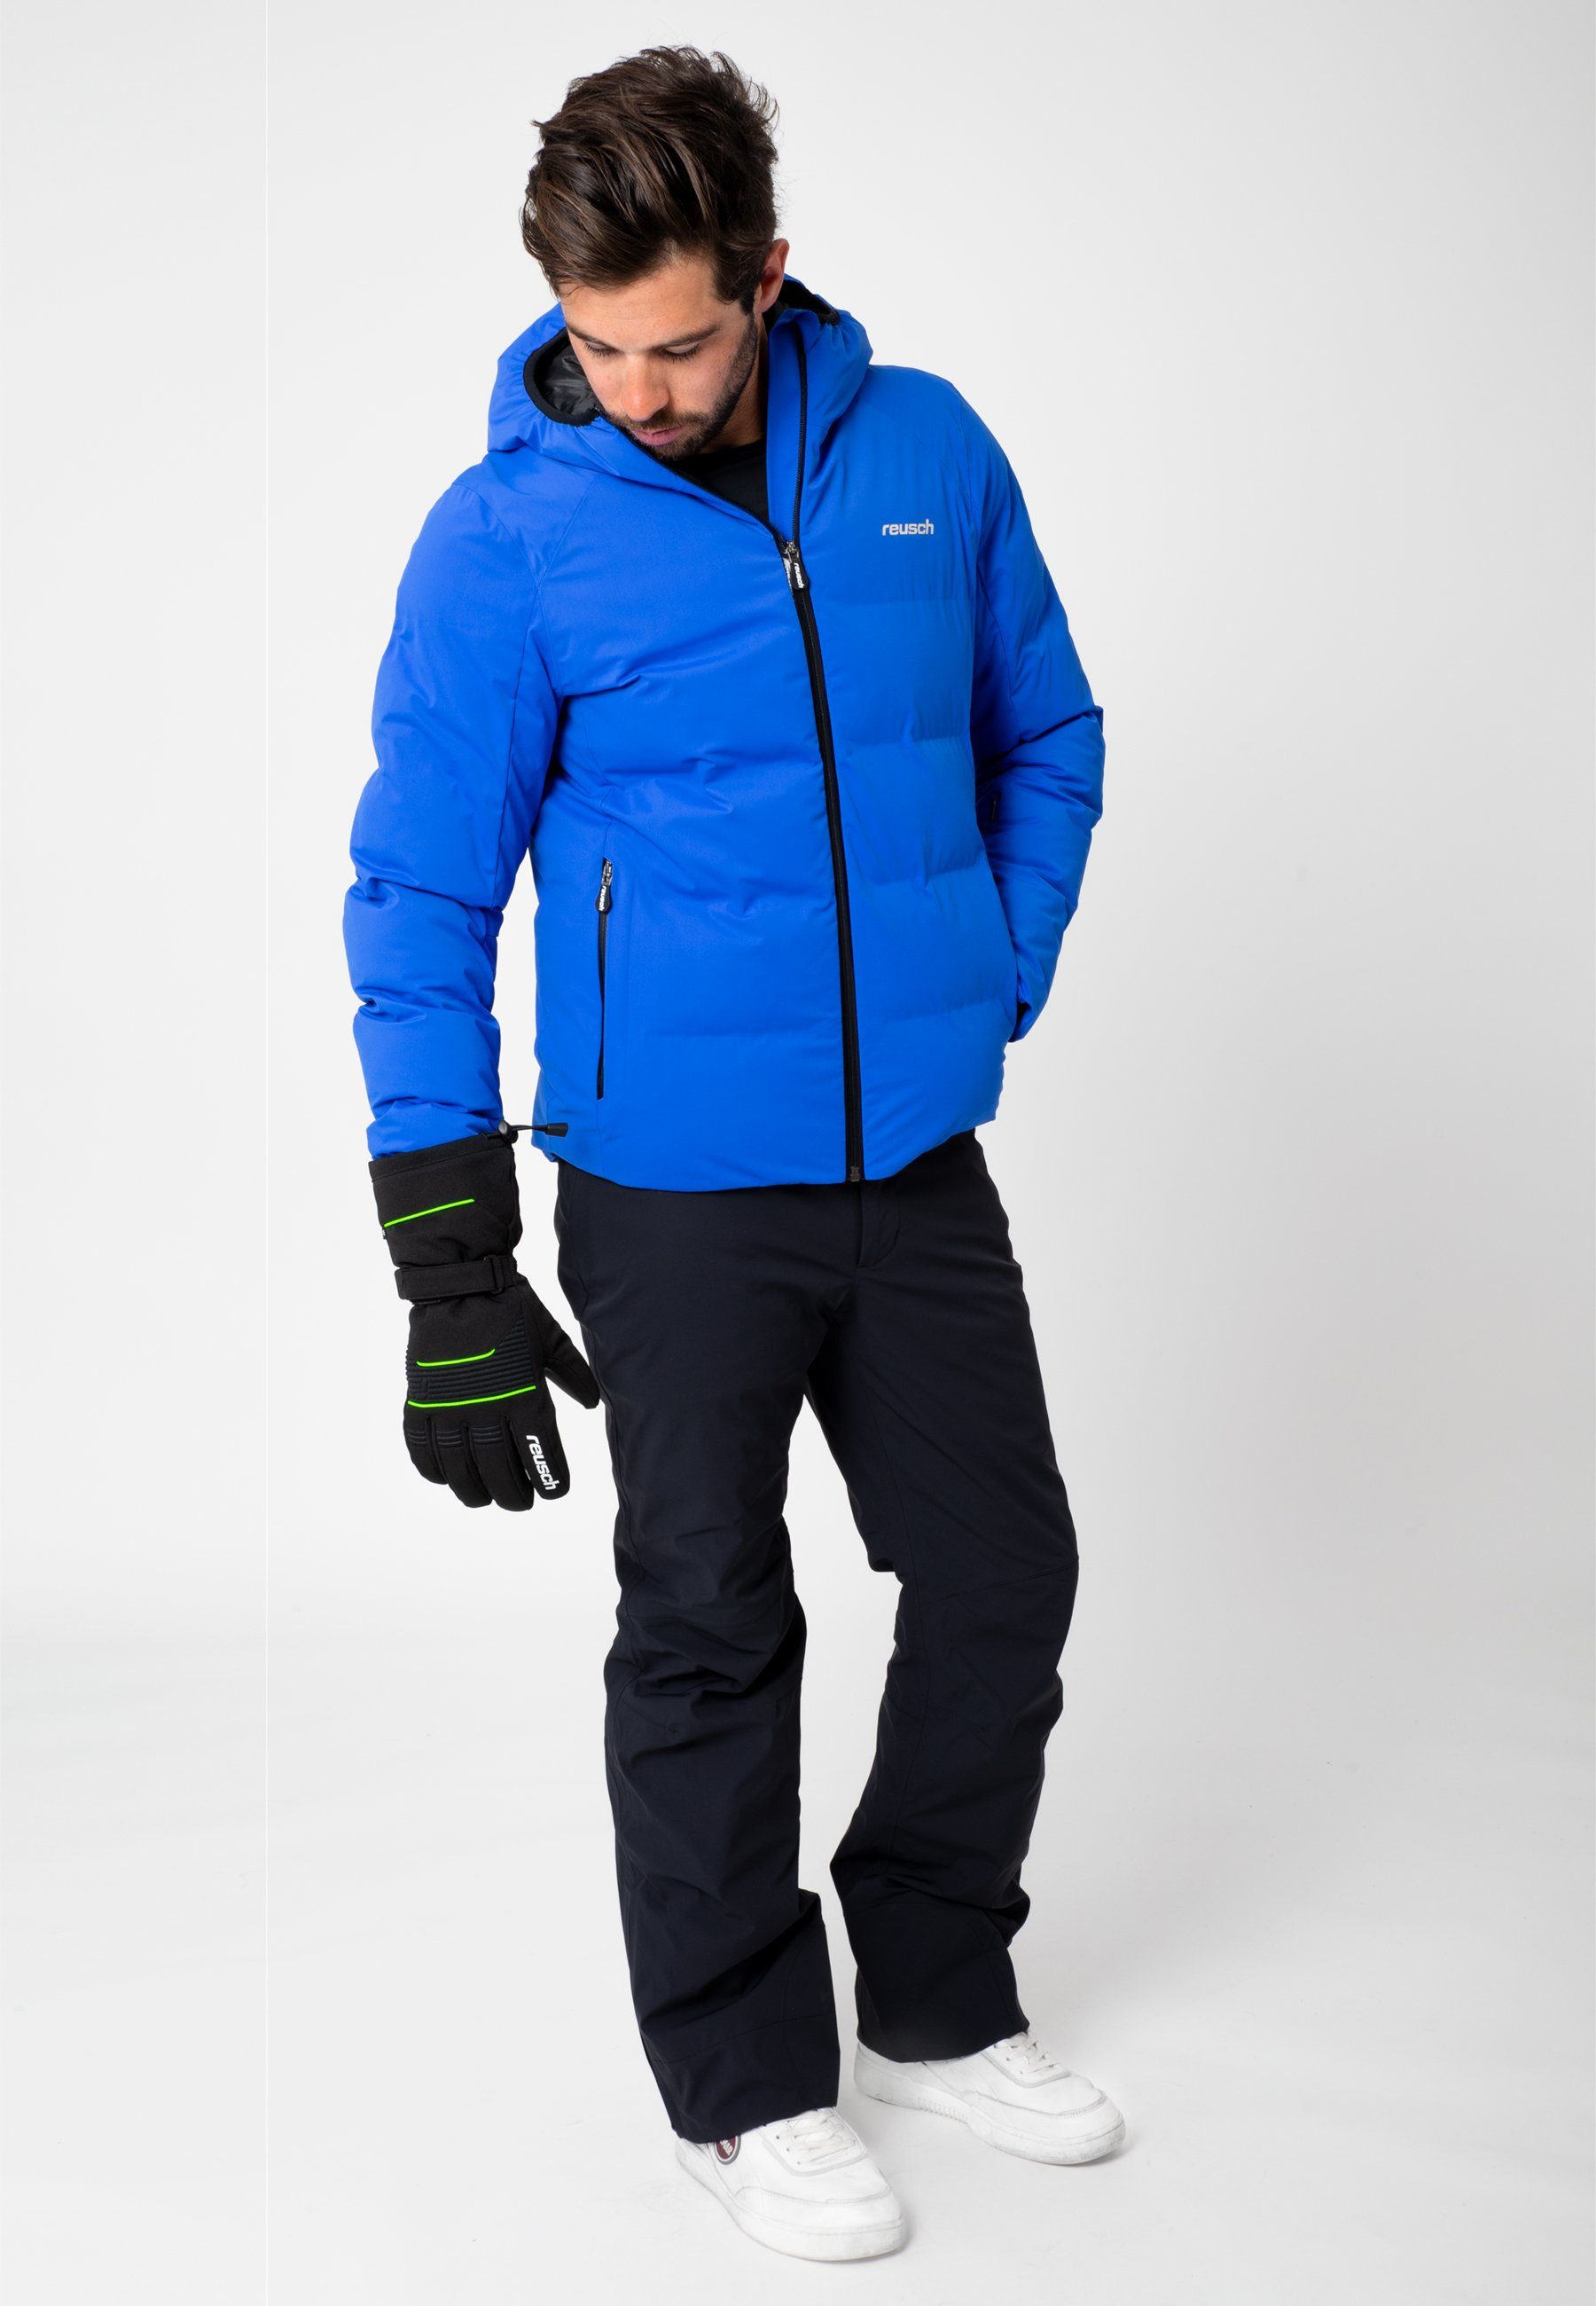 Crosby grün-schwarz R-TEX® Design sportlichem Reusch in Skihandschuhe XT